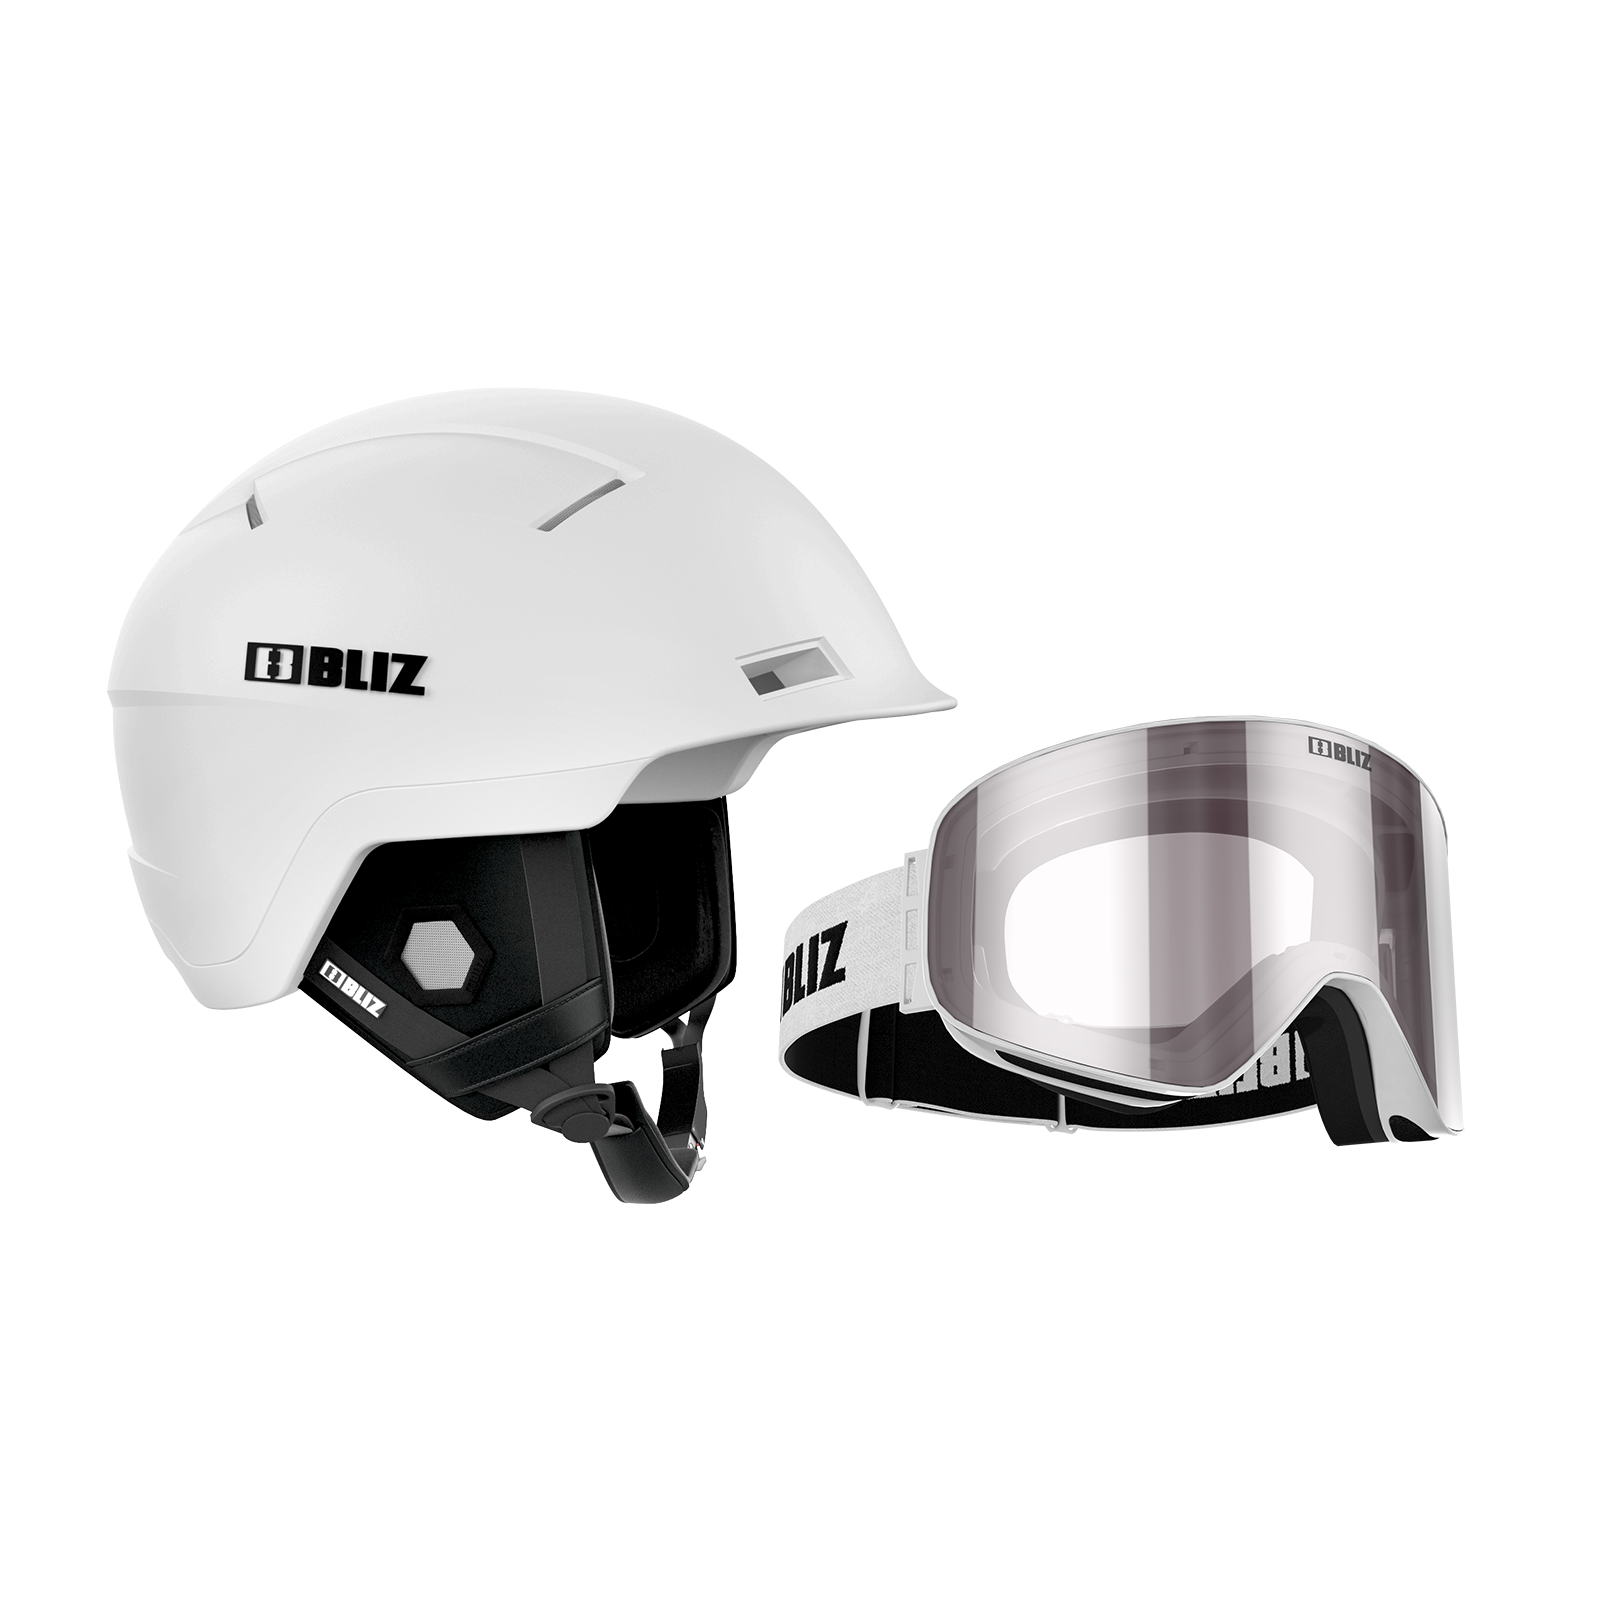  Ski Helmet	 -  bliz Bliz Helmet / Goggle Package